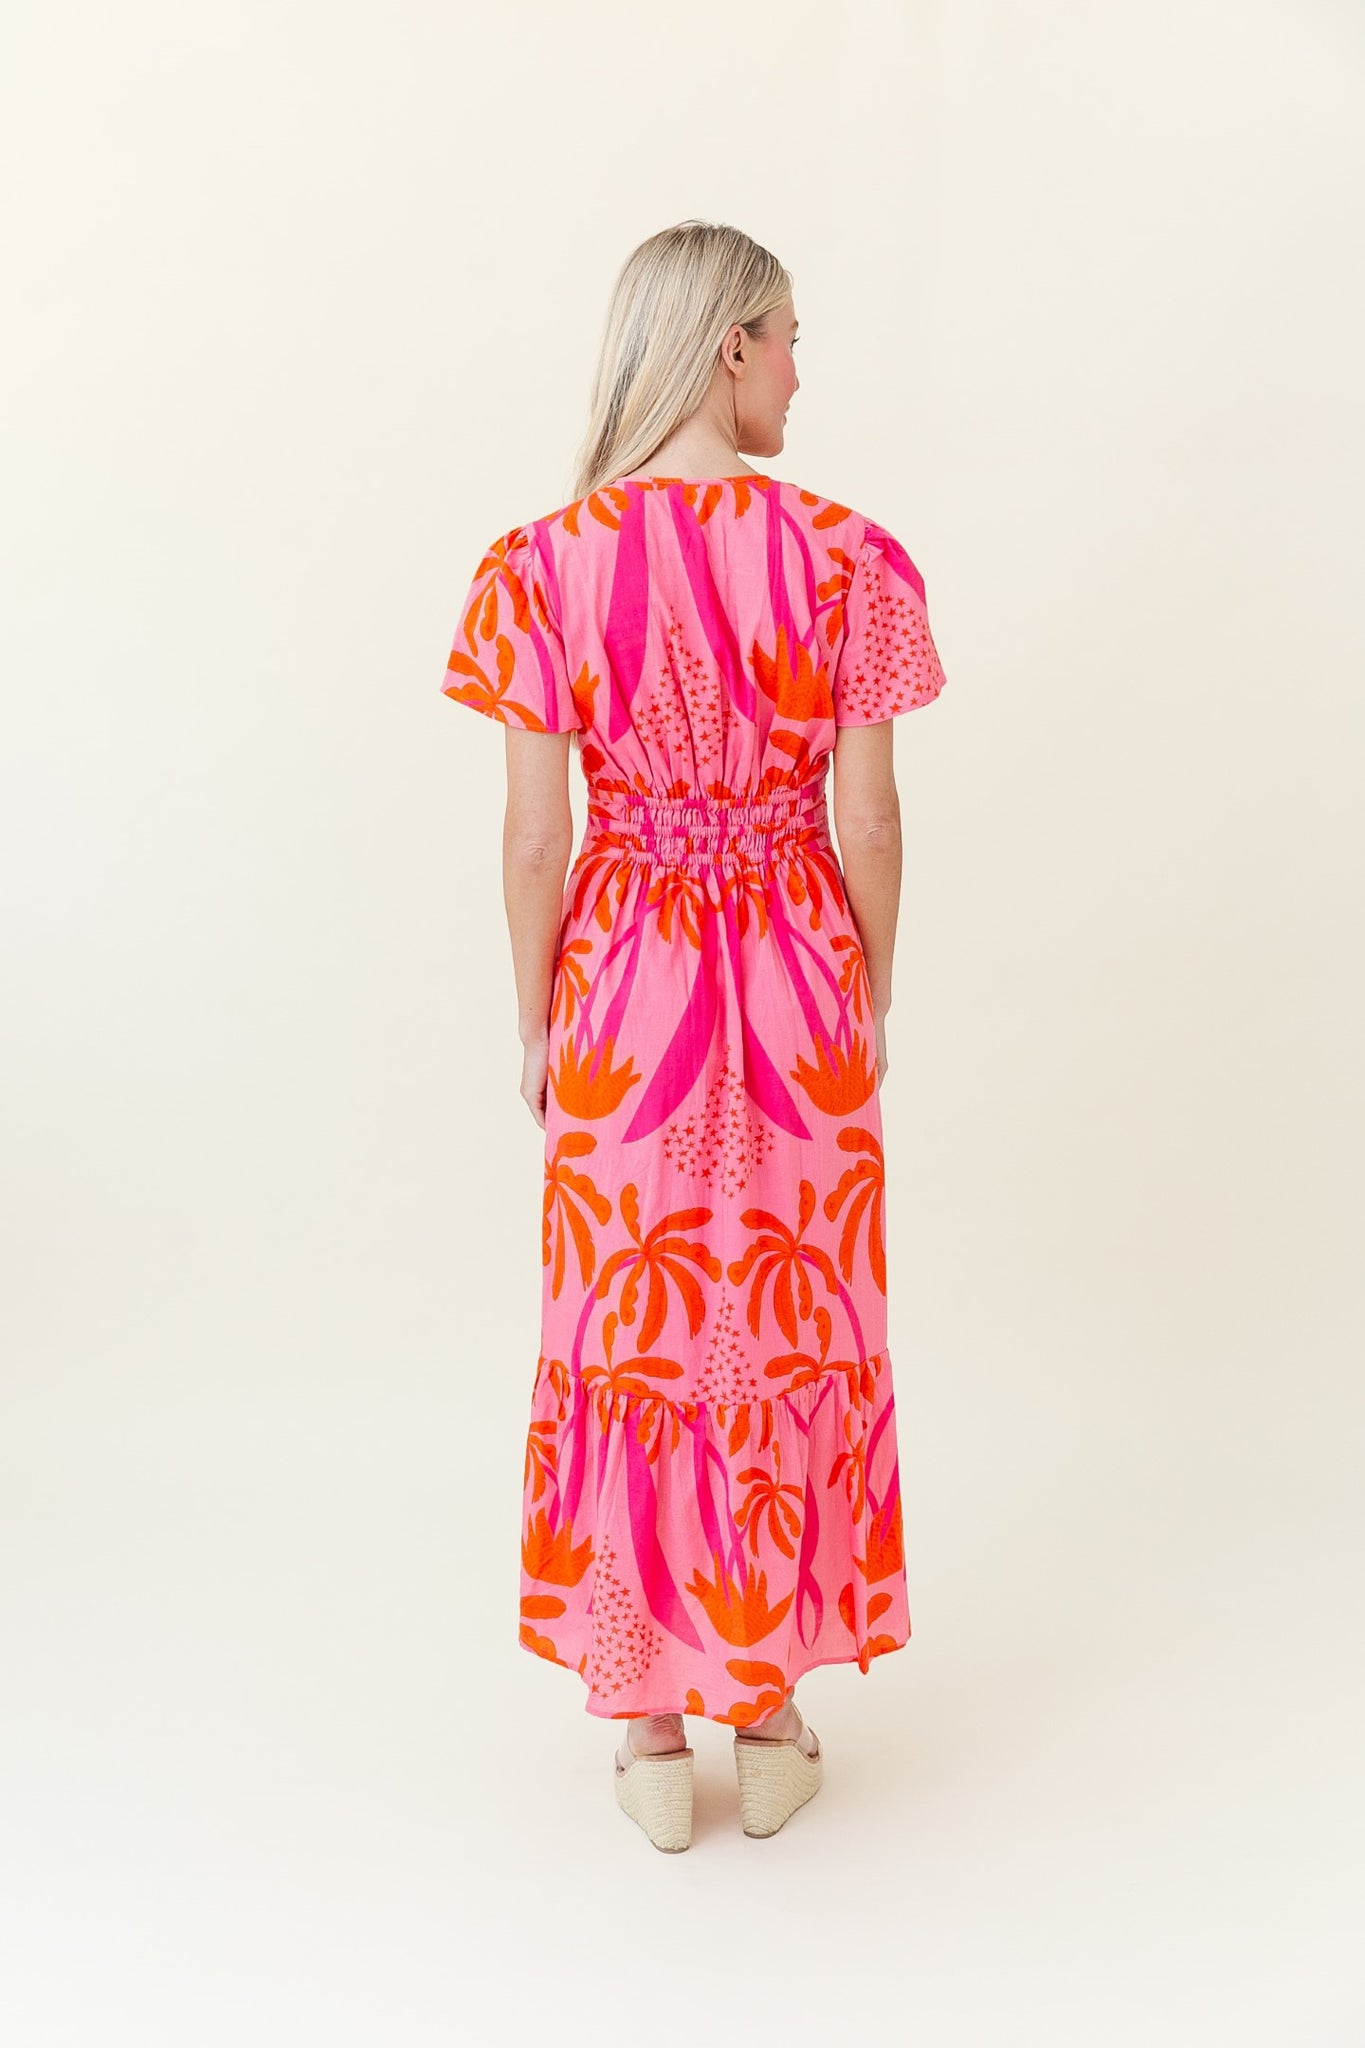 Eloise Dress in King Street Palm